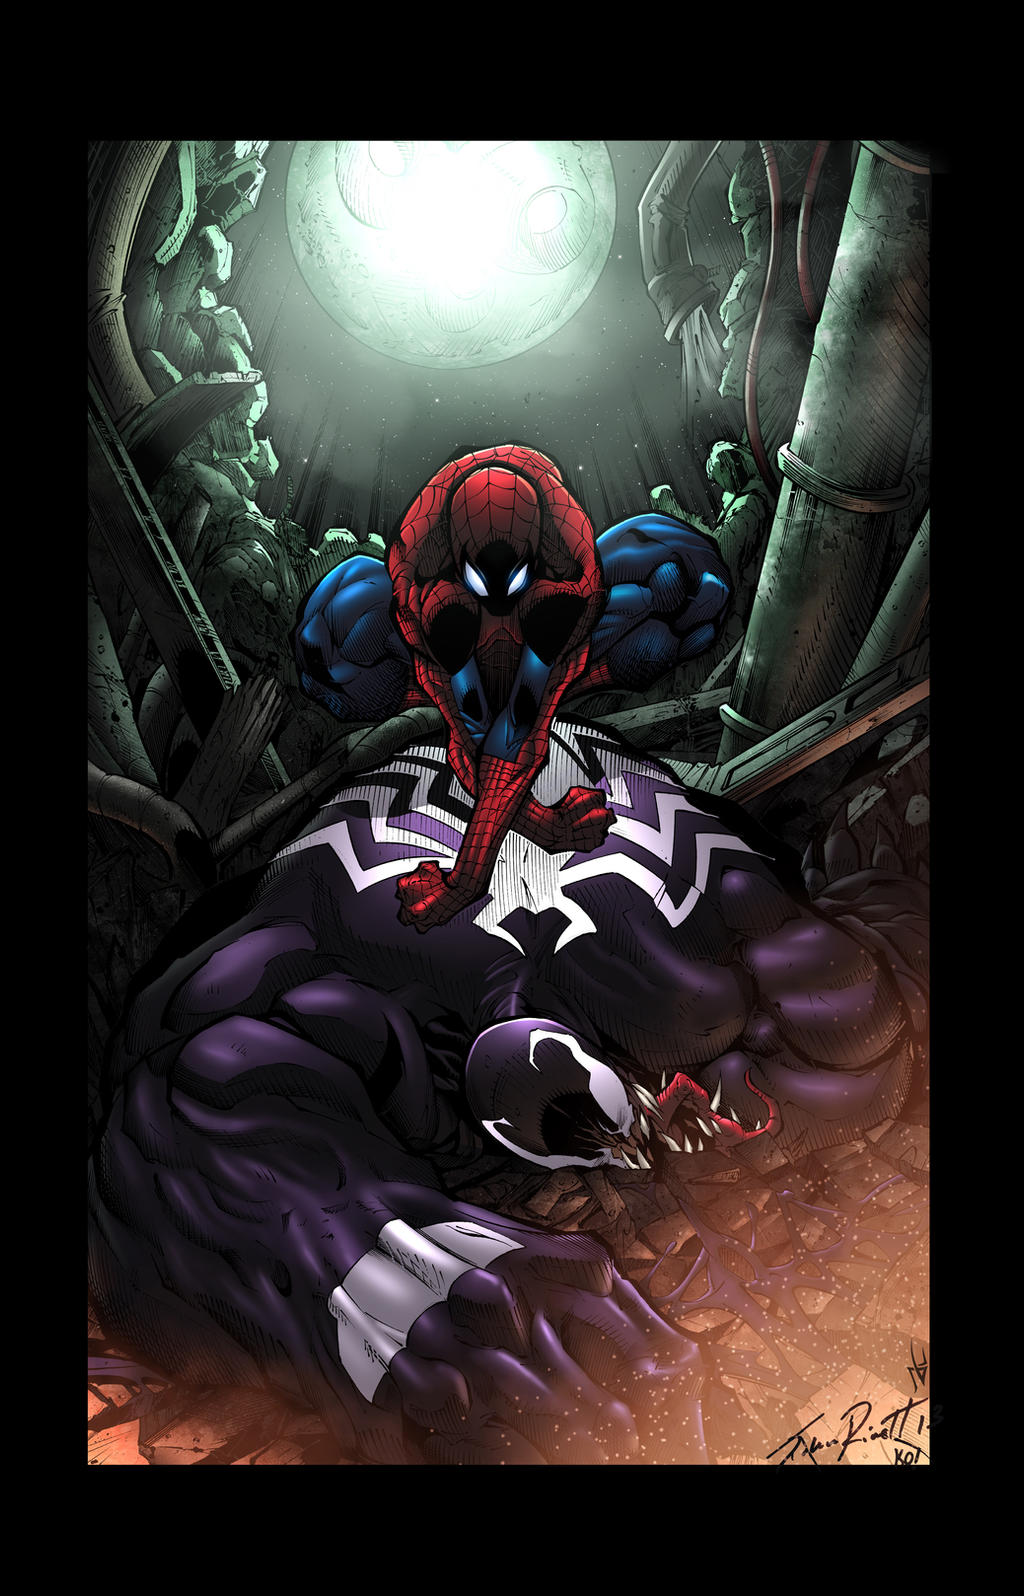 Venom/Spiderman - Rivett/Kordos/Lavy